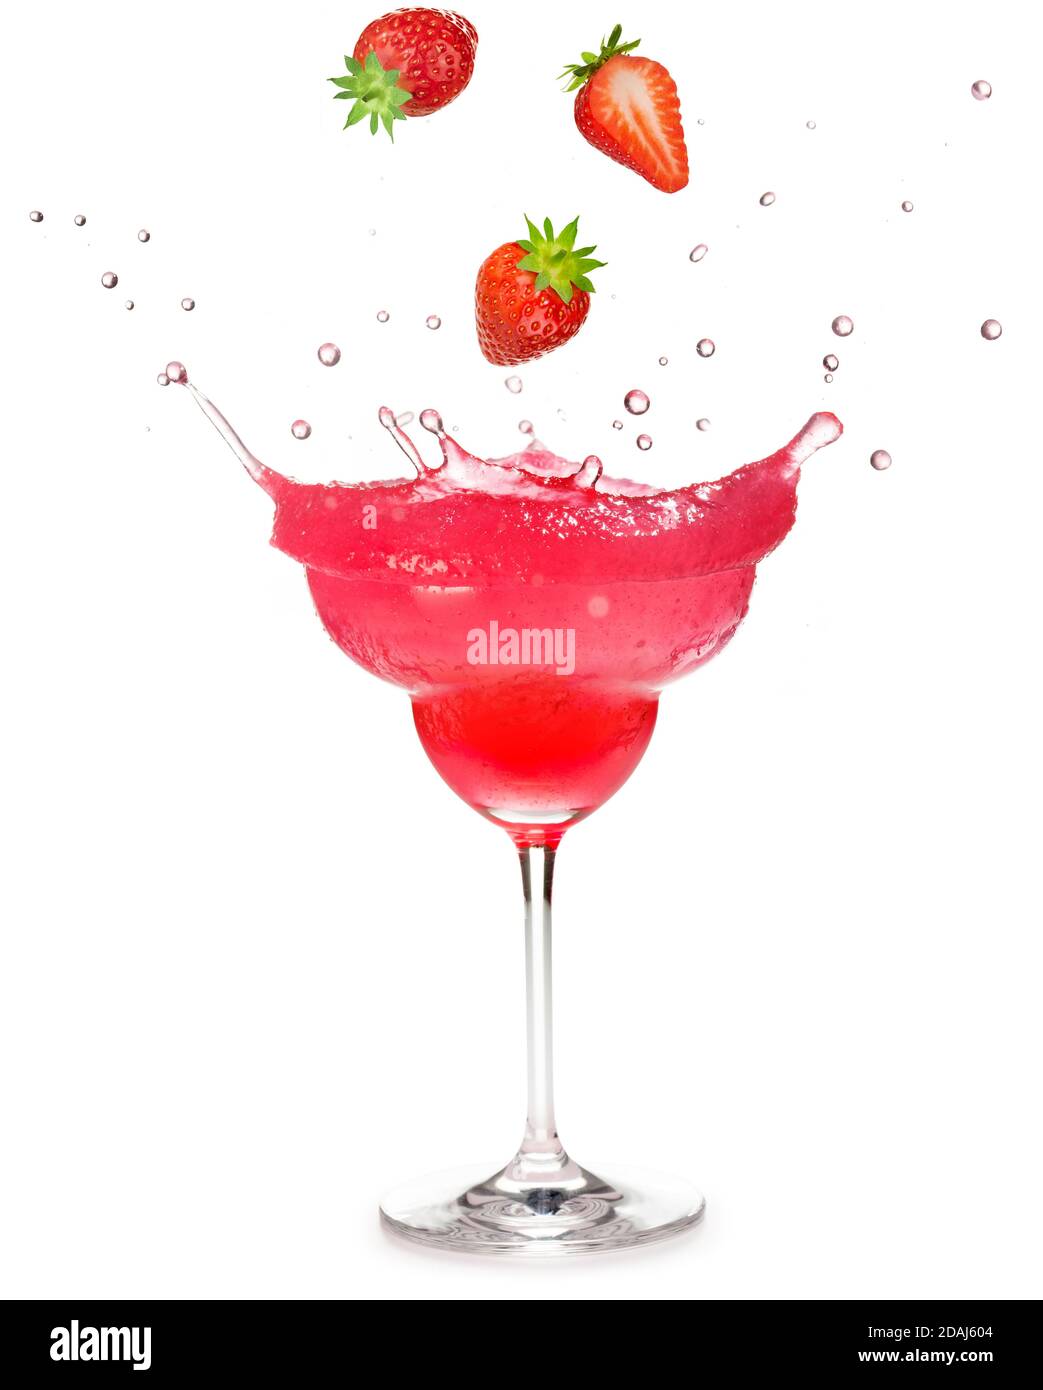 Erdbeeren, die in einen gefrorenen Erdbeer-Cocktail fallen, der auf Weiß spritzt Hintergrund Stockfoto